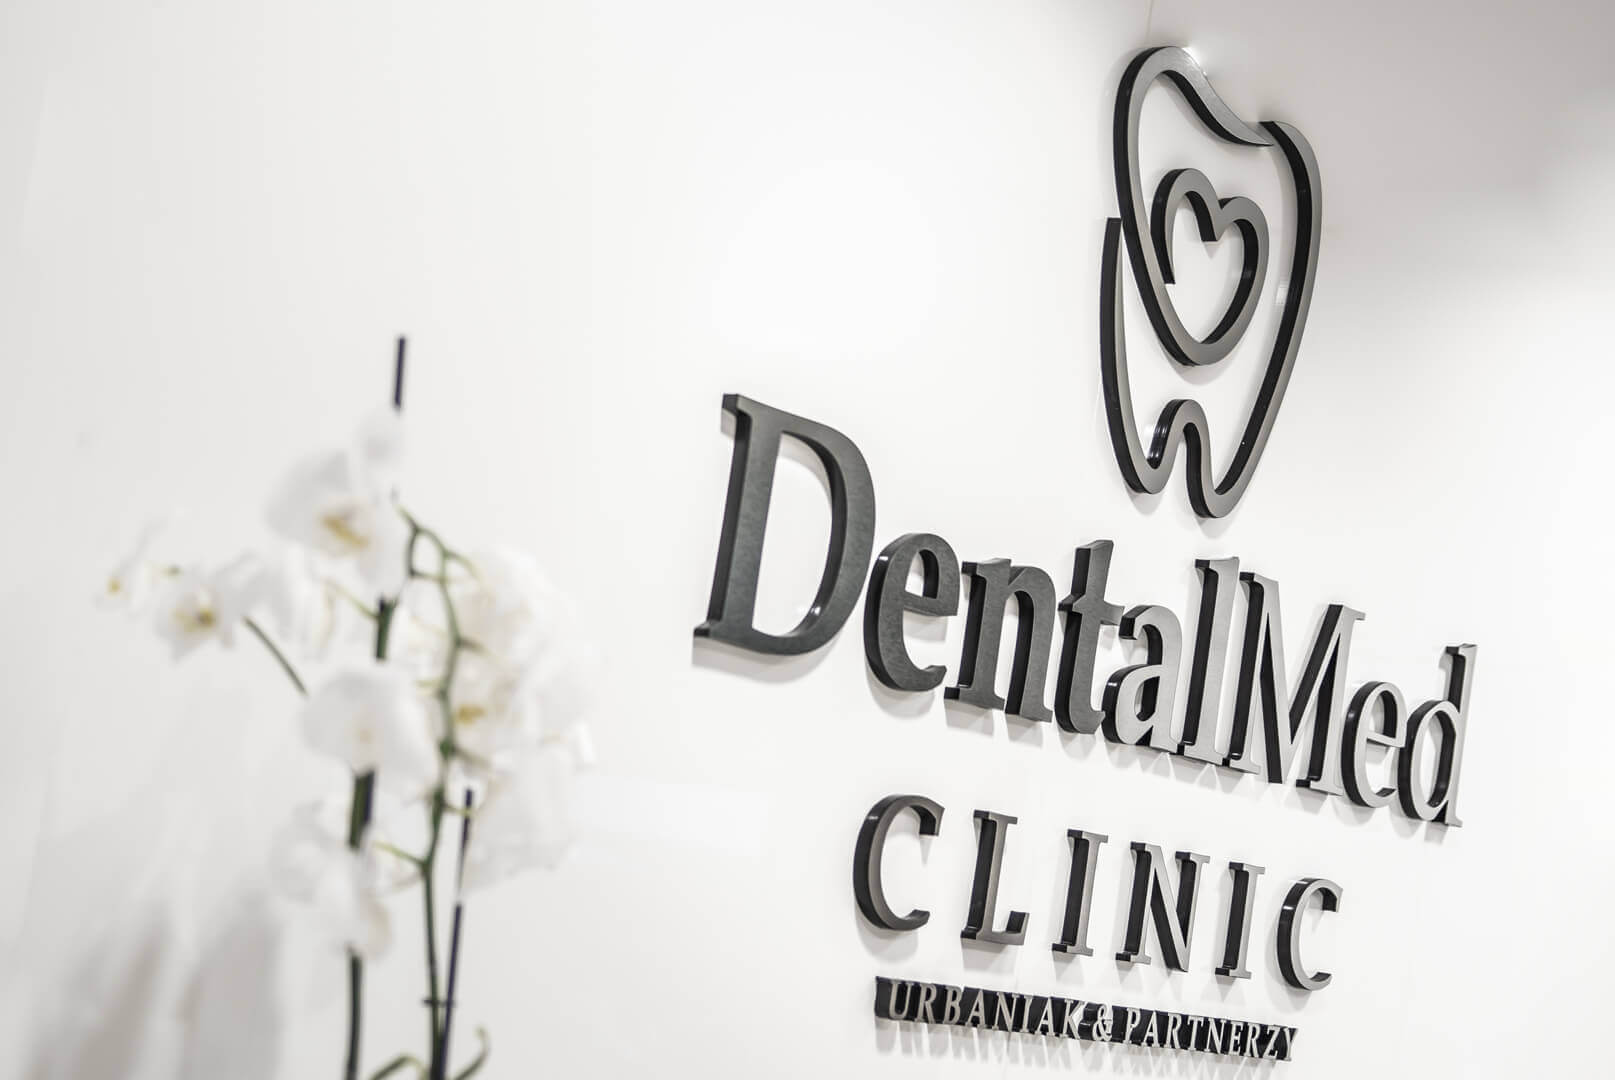 DentalMed - DentalMed - logo et lettres 3D en plexiglas placés à côté de la réception